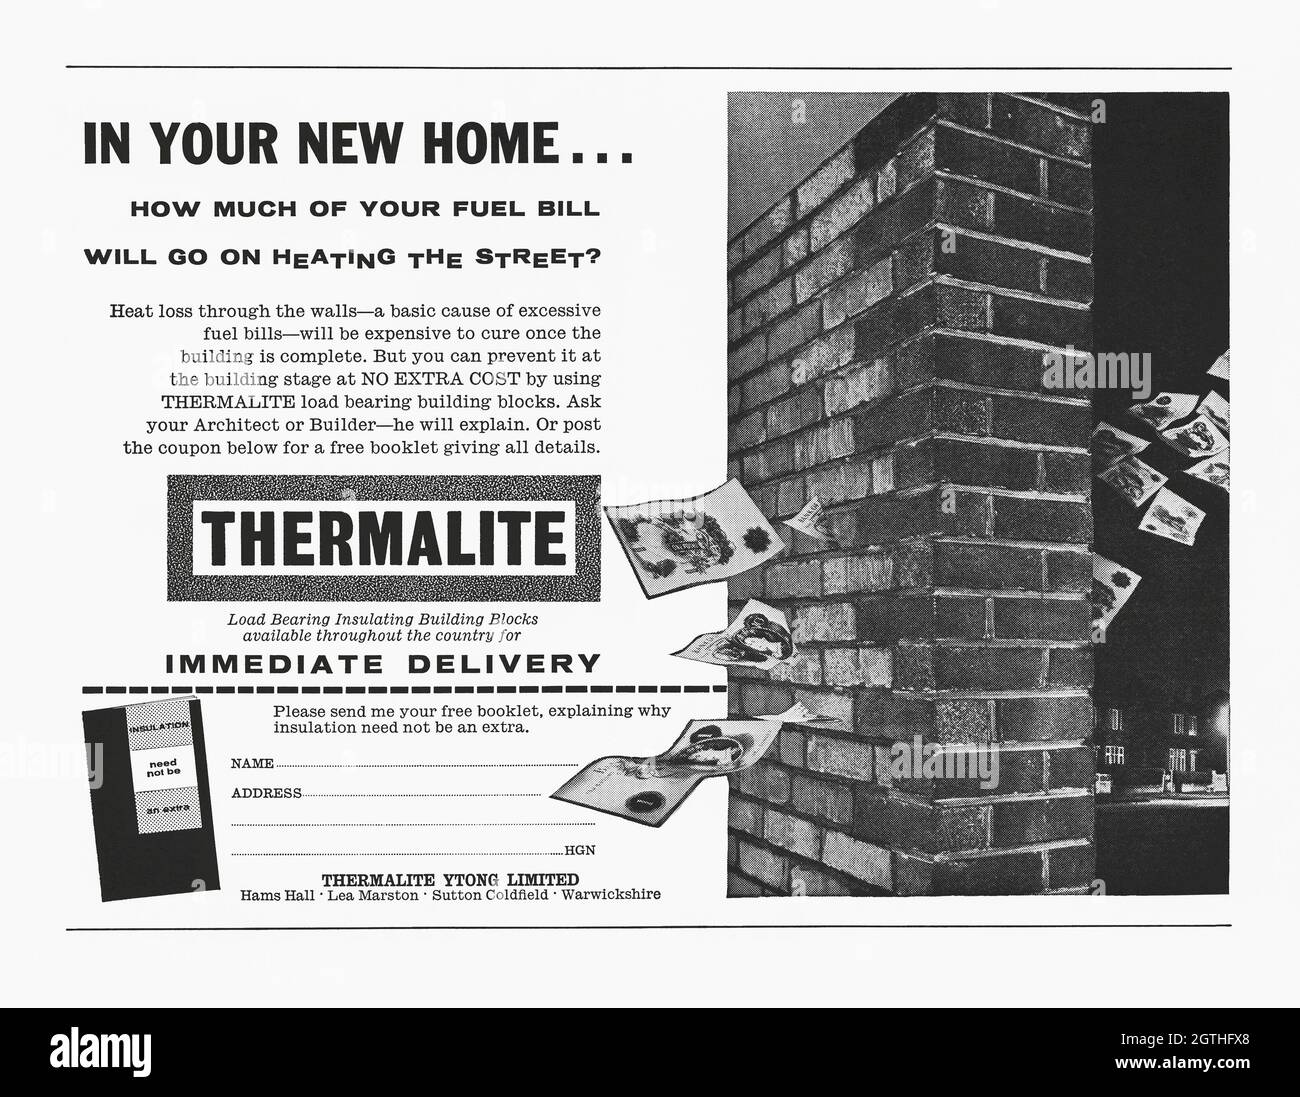 Une publicité des années 1960 pour les briques thermalites.La publicité est apparue dans un magazine publié au Royaume-Uni en octobre 1962.Les briques sont promues comme un produit économique avec une photo montrant de l'argent (livres) disparaître de l'intérieur de la maison à travers un mur traditionnel de briques.Les produits thermalite sont fabriqués à partir de béton cellulaire (AAC) autoclavé, un matériau de construction léger en béton préfabriqué et en mousse adapté à la production de blocs d'unité de maçonnerie en béton (CMU).AAC a été développé au milieu des années 1920 en Suède – graphiques vintage des années 1960. Banque D'Images